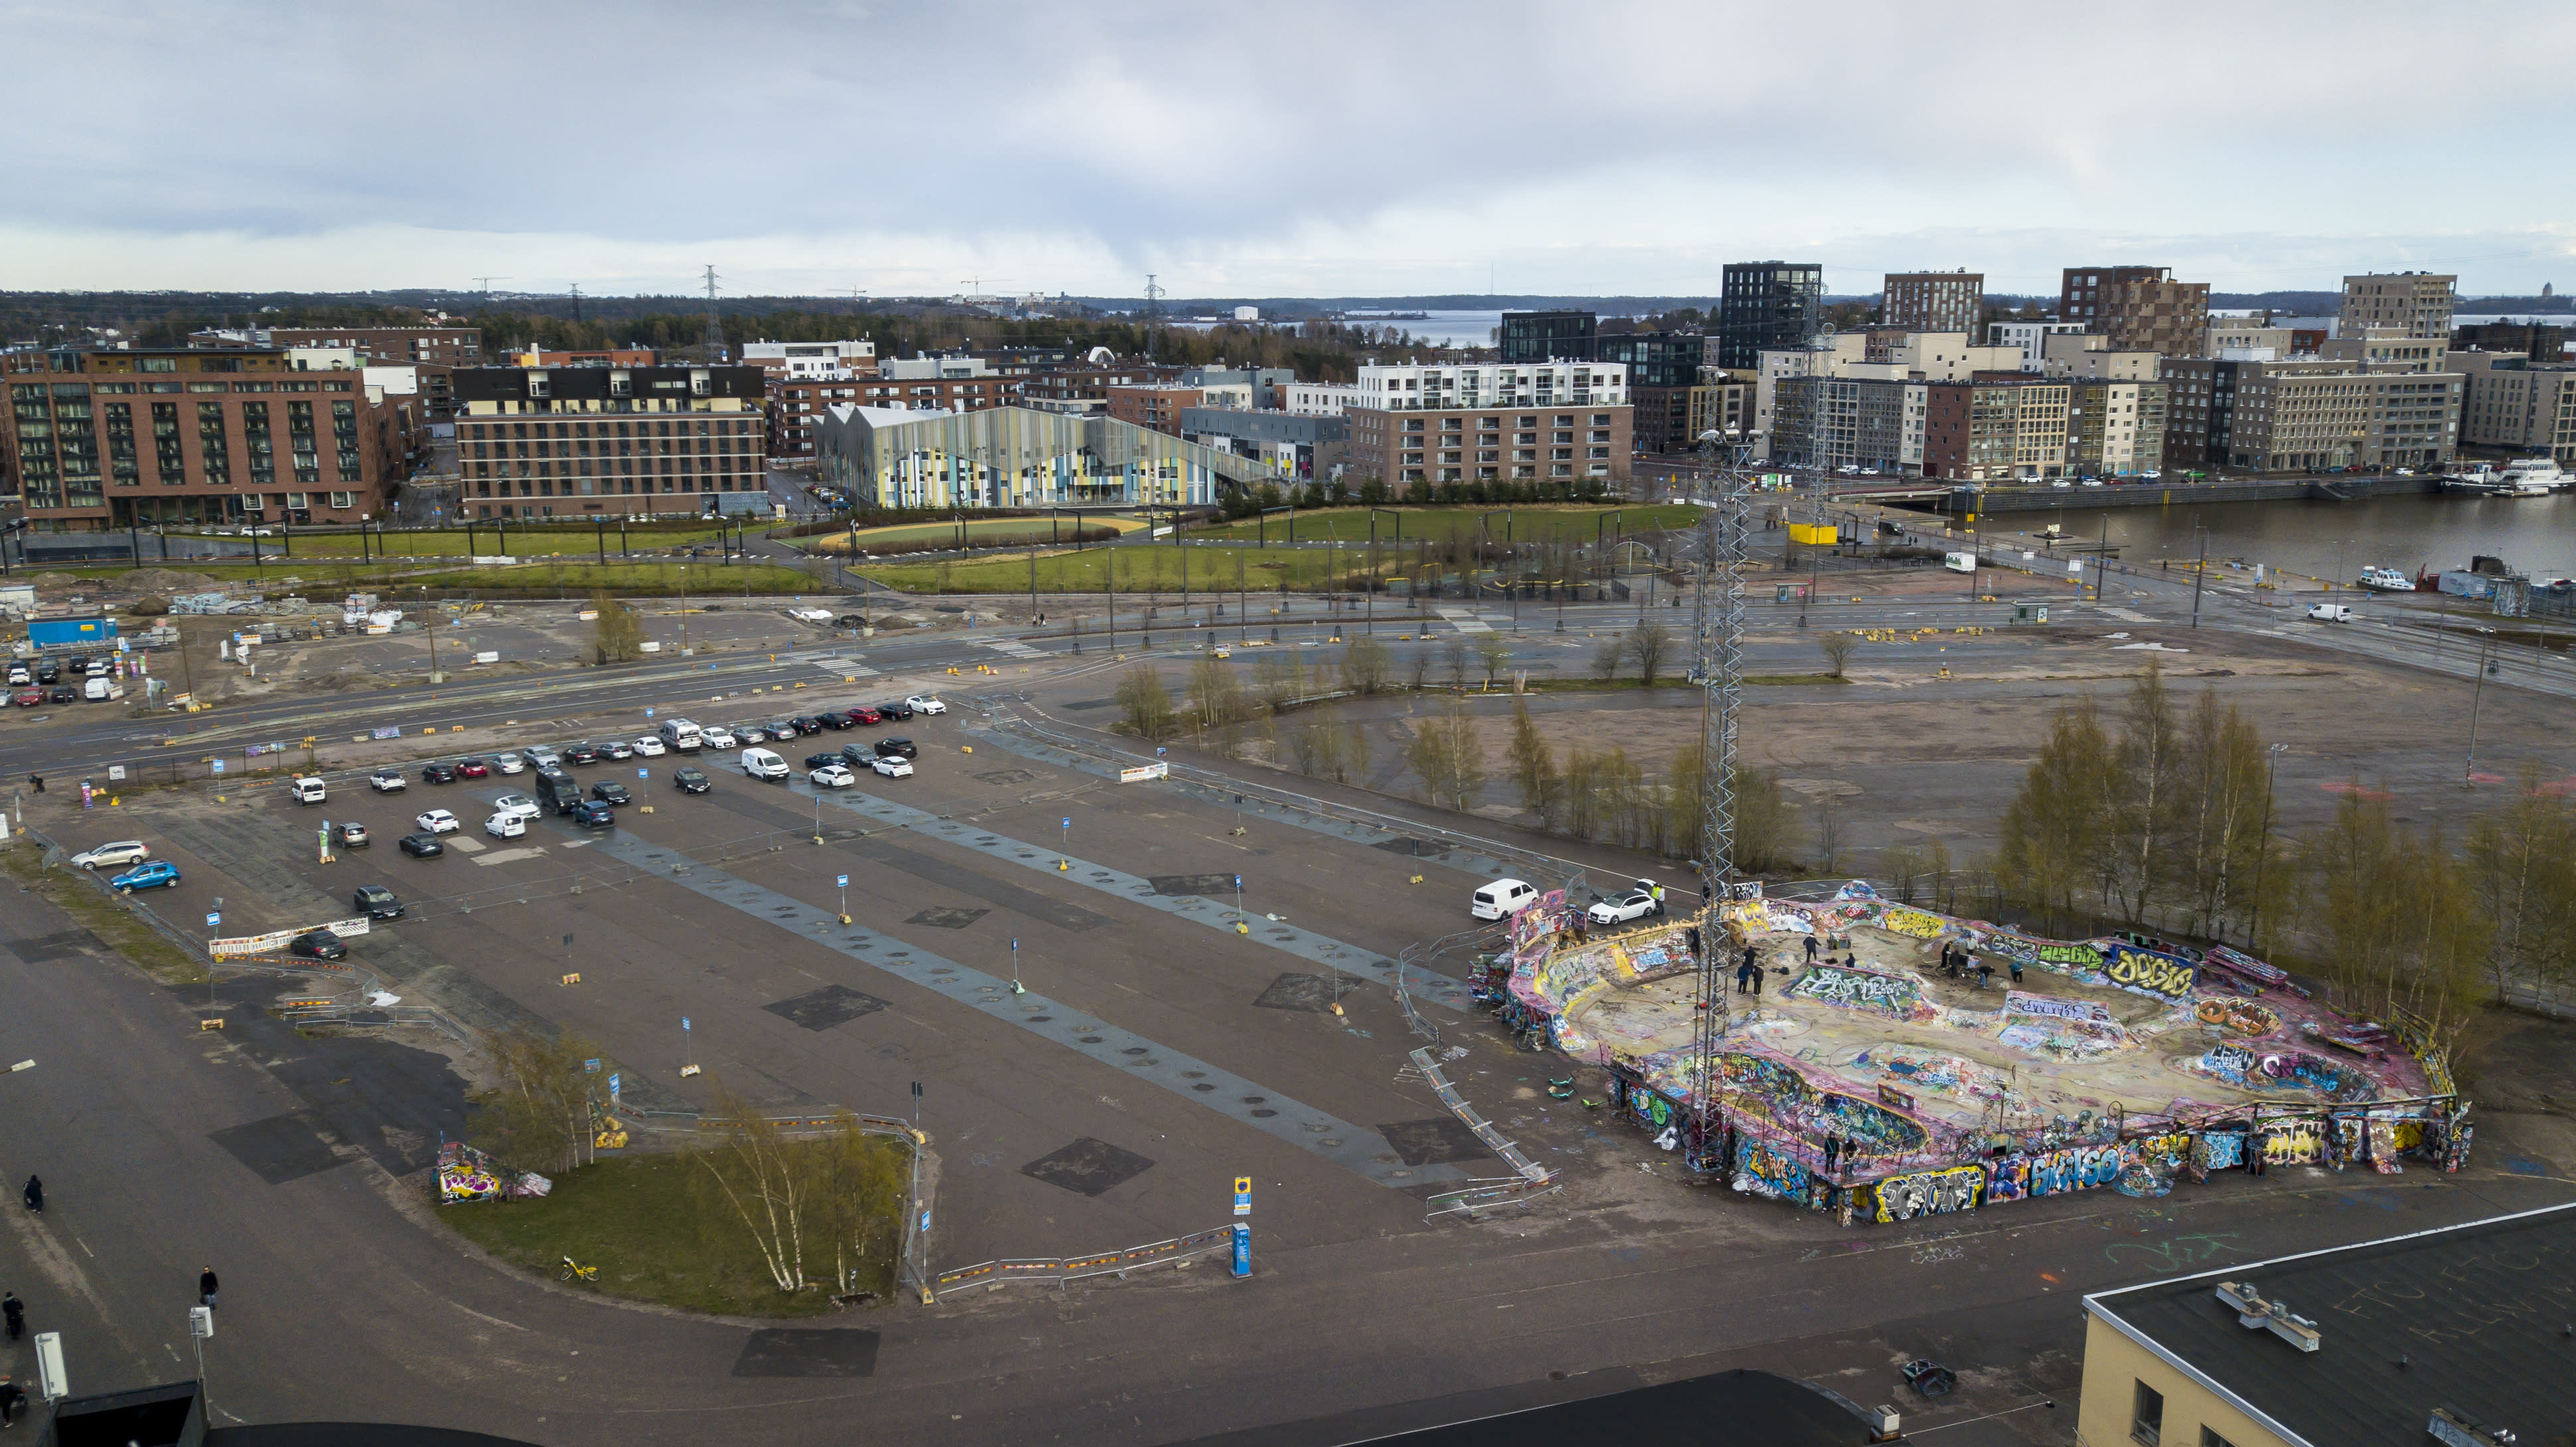 Pläne für ein neues Veranstaltungszentrum vertreiben Skateboarder aus dem beliebten Helsinki Park